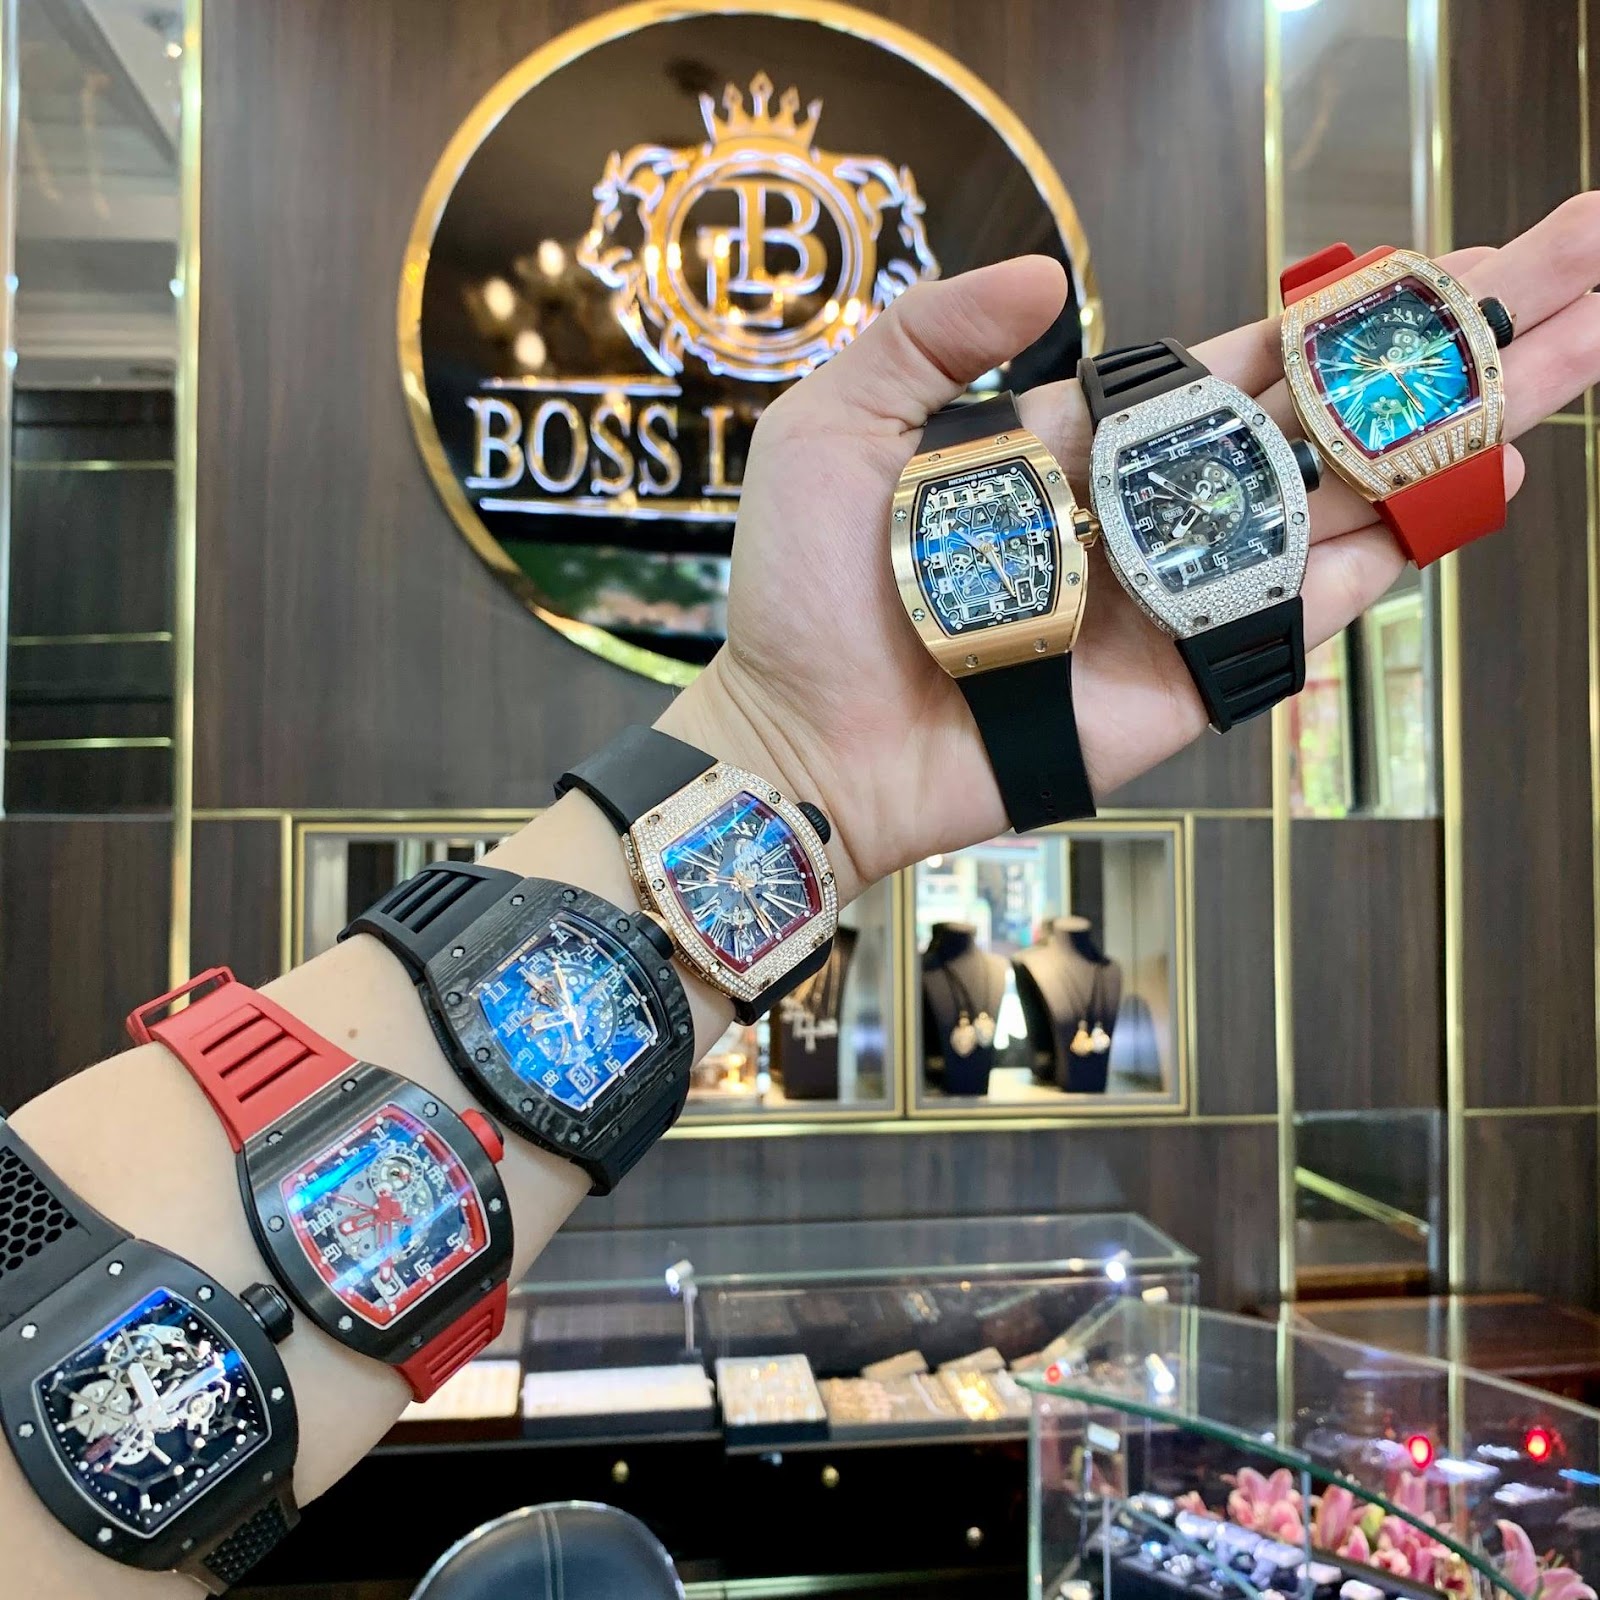 Boss Luxury – Sân chơi đồng hồ hạng sang dành cho giới thượng lưu